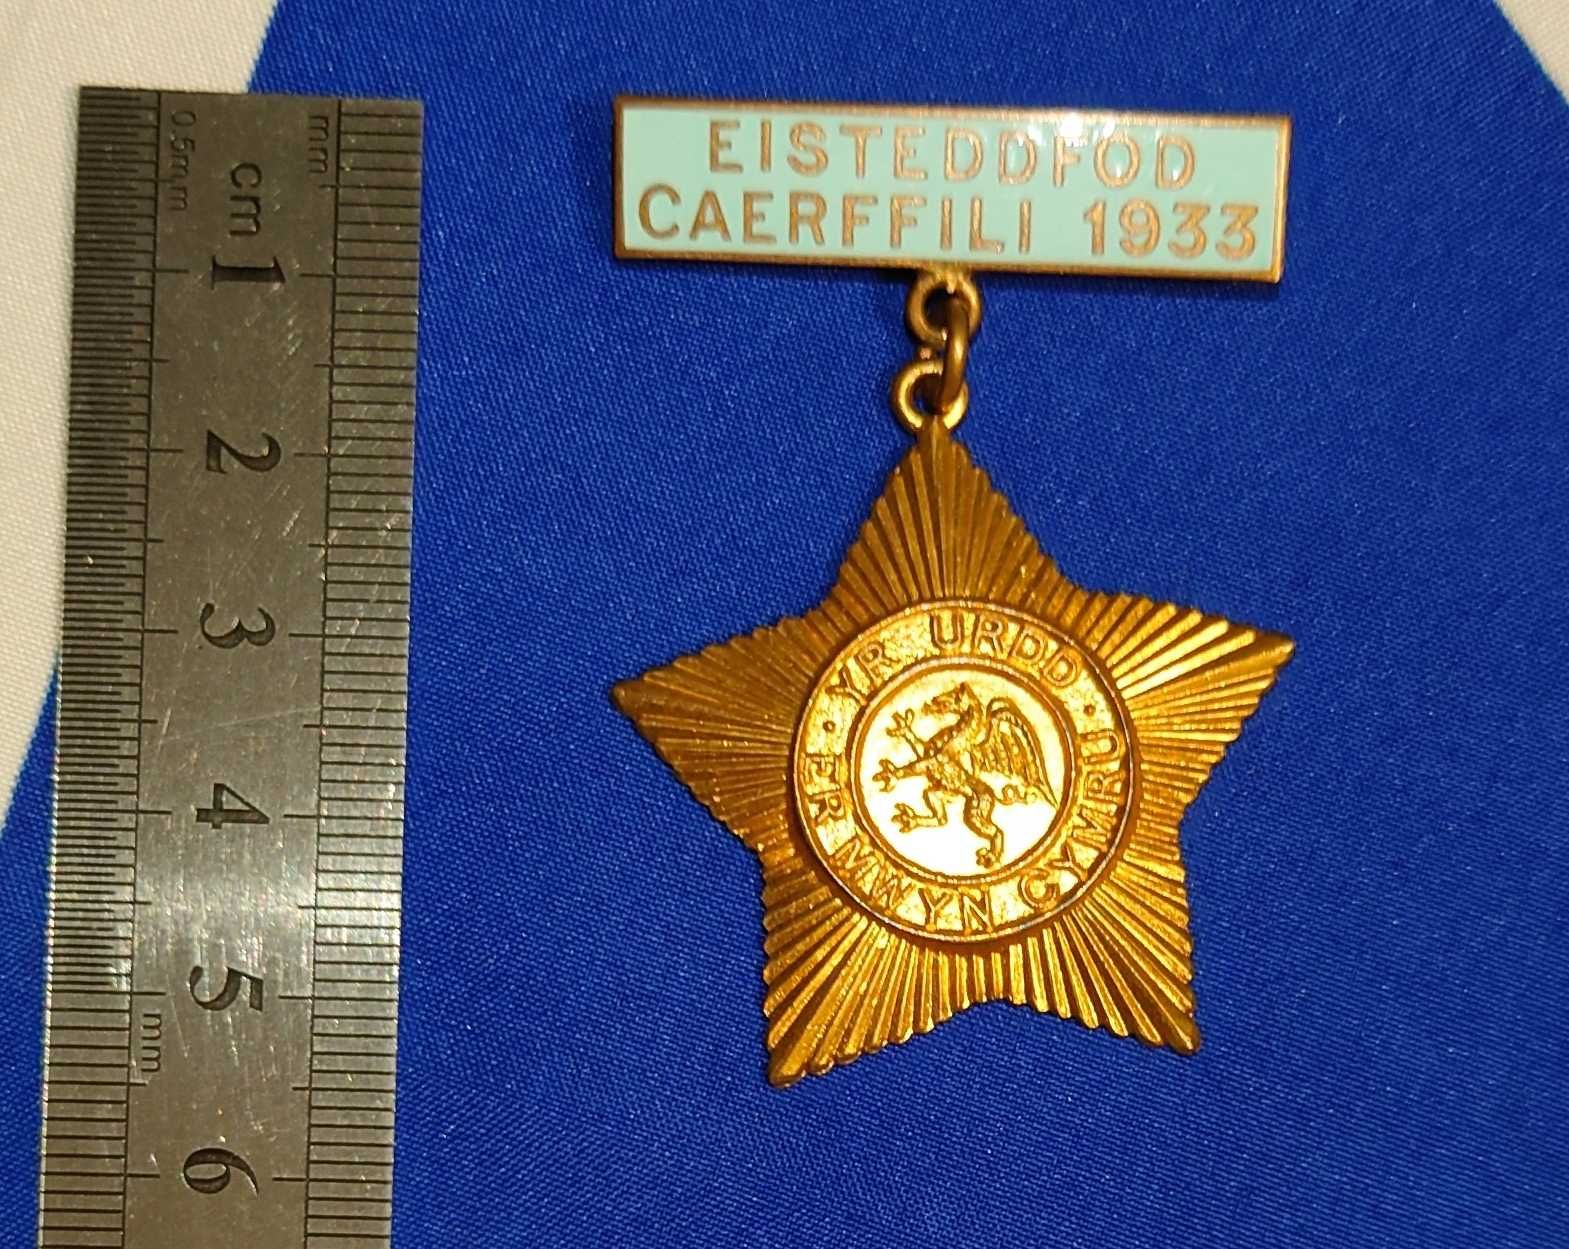 Медаль 1933 Caerffili (Caerphilly) Eisteddfod. Великобритания.